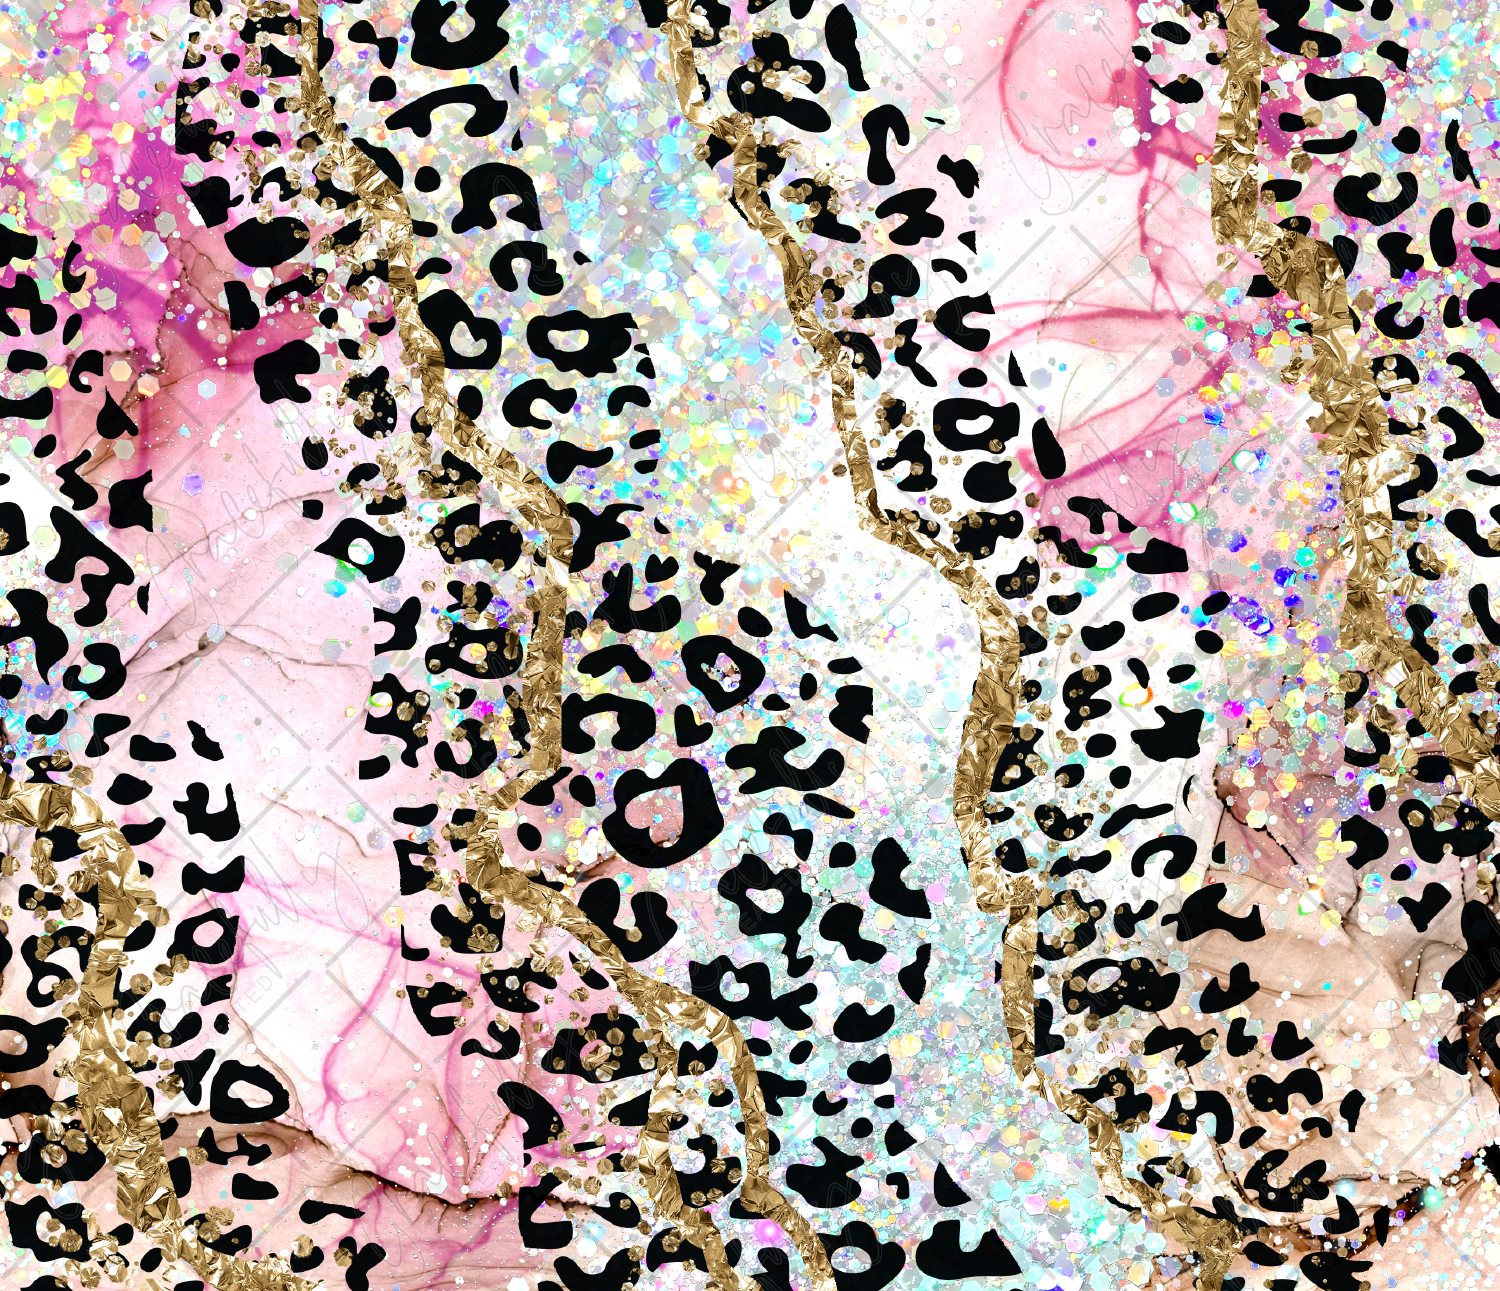 Glitter Leopard Fabric, Wallpaper and Home Decor